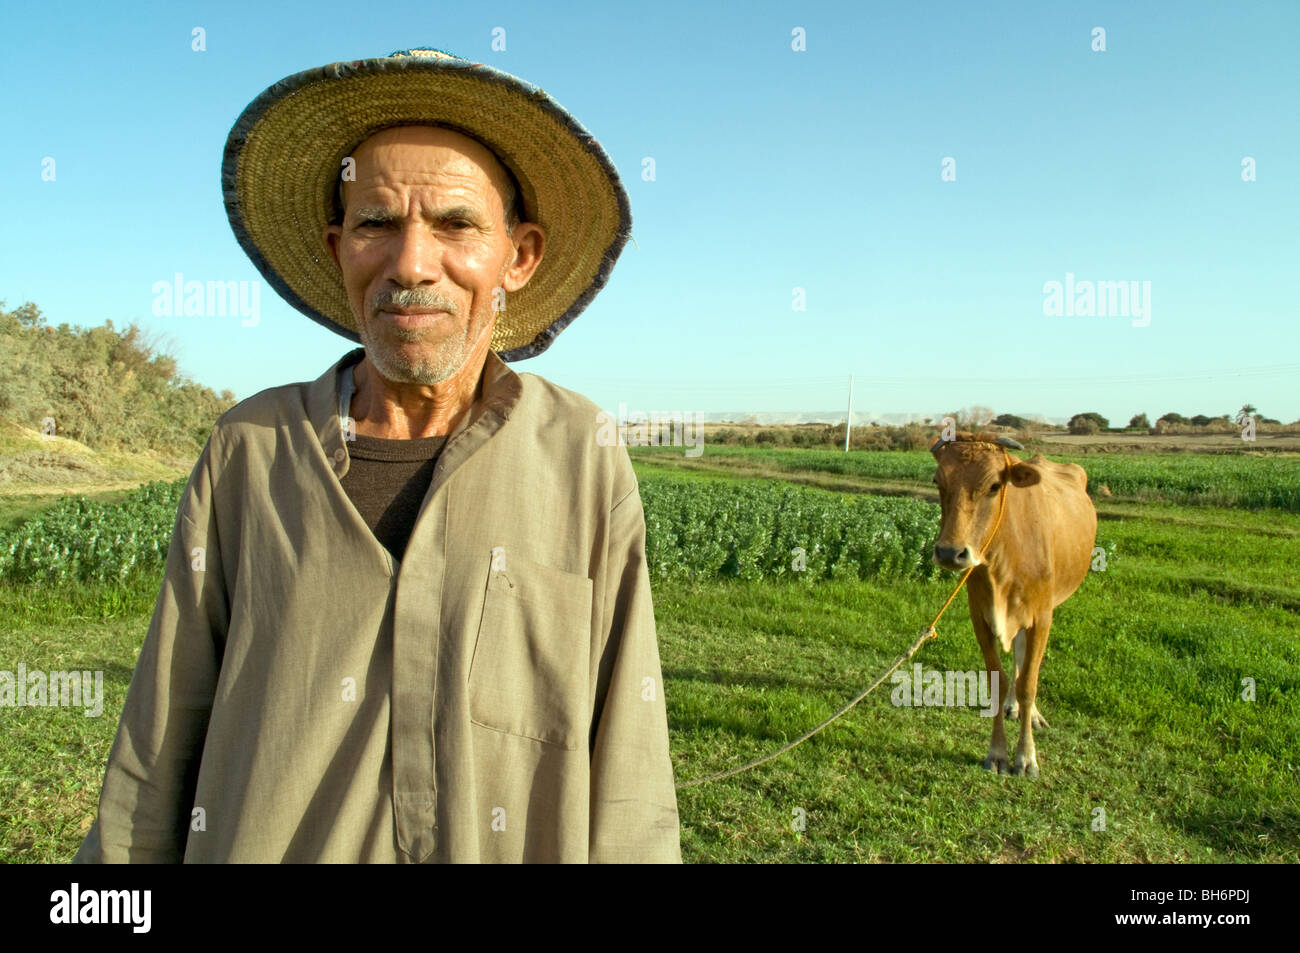 Un vecchio contadino egiziano in un cappello di paglia e la sua mucca vicino alla città sahariana di Al Qasr in Dakhla Oasis, situato nel Deserto Occidentale Regione in Egitto. Foto Stock